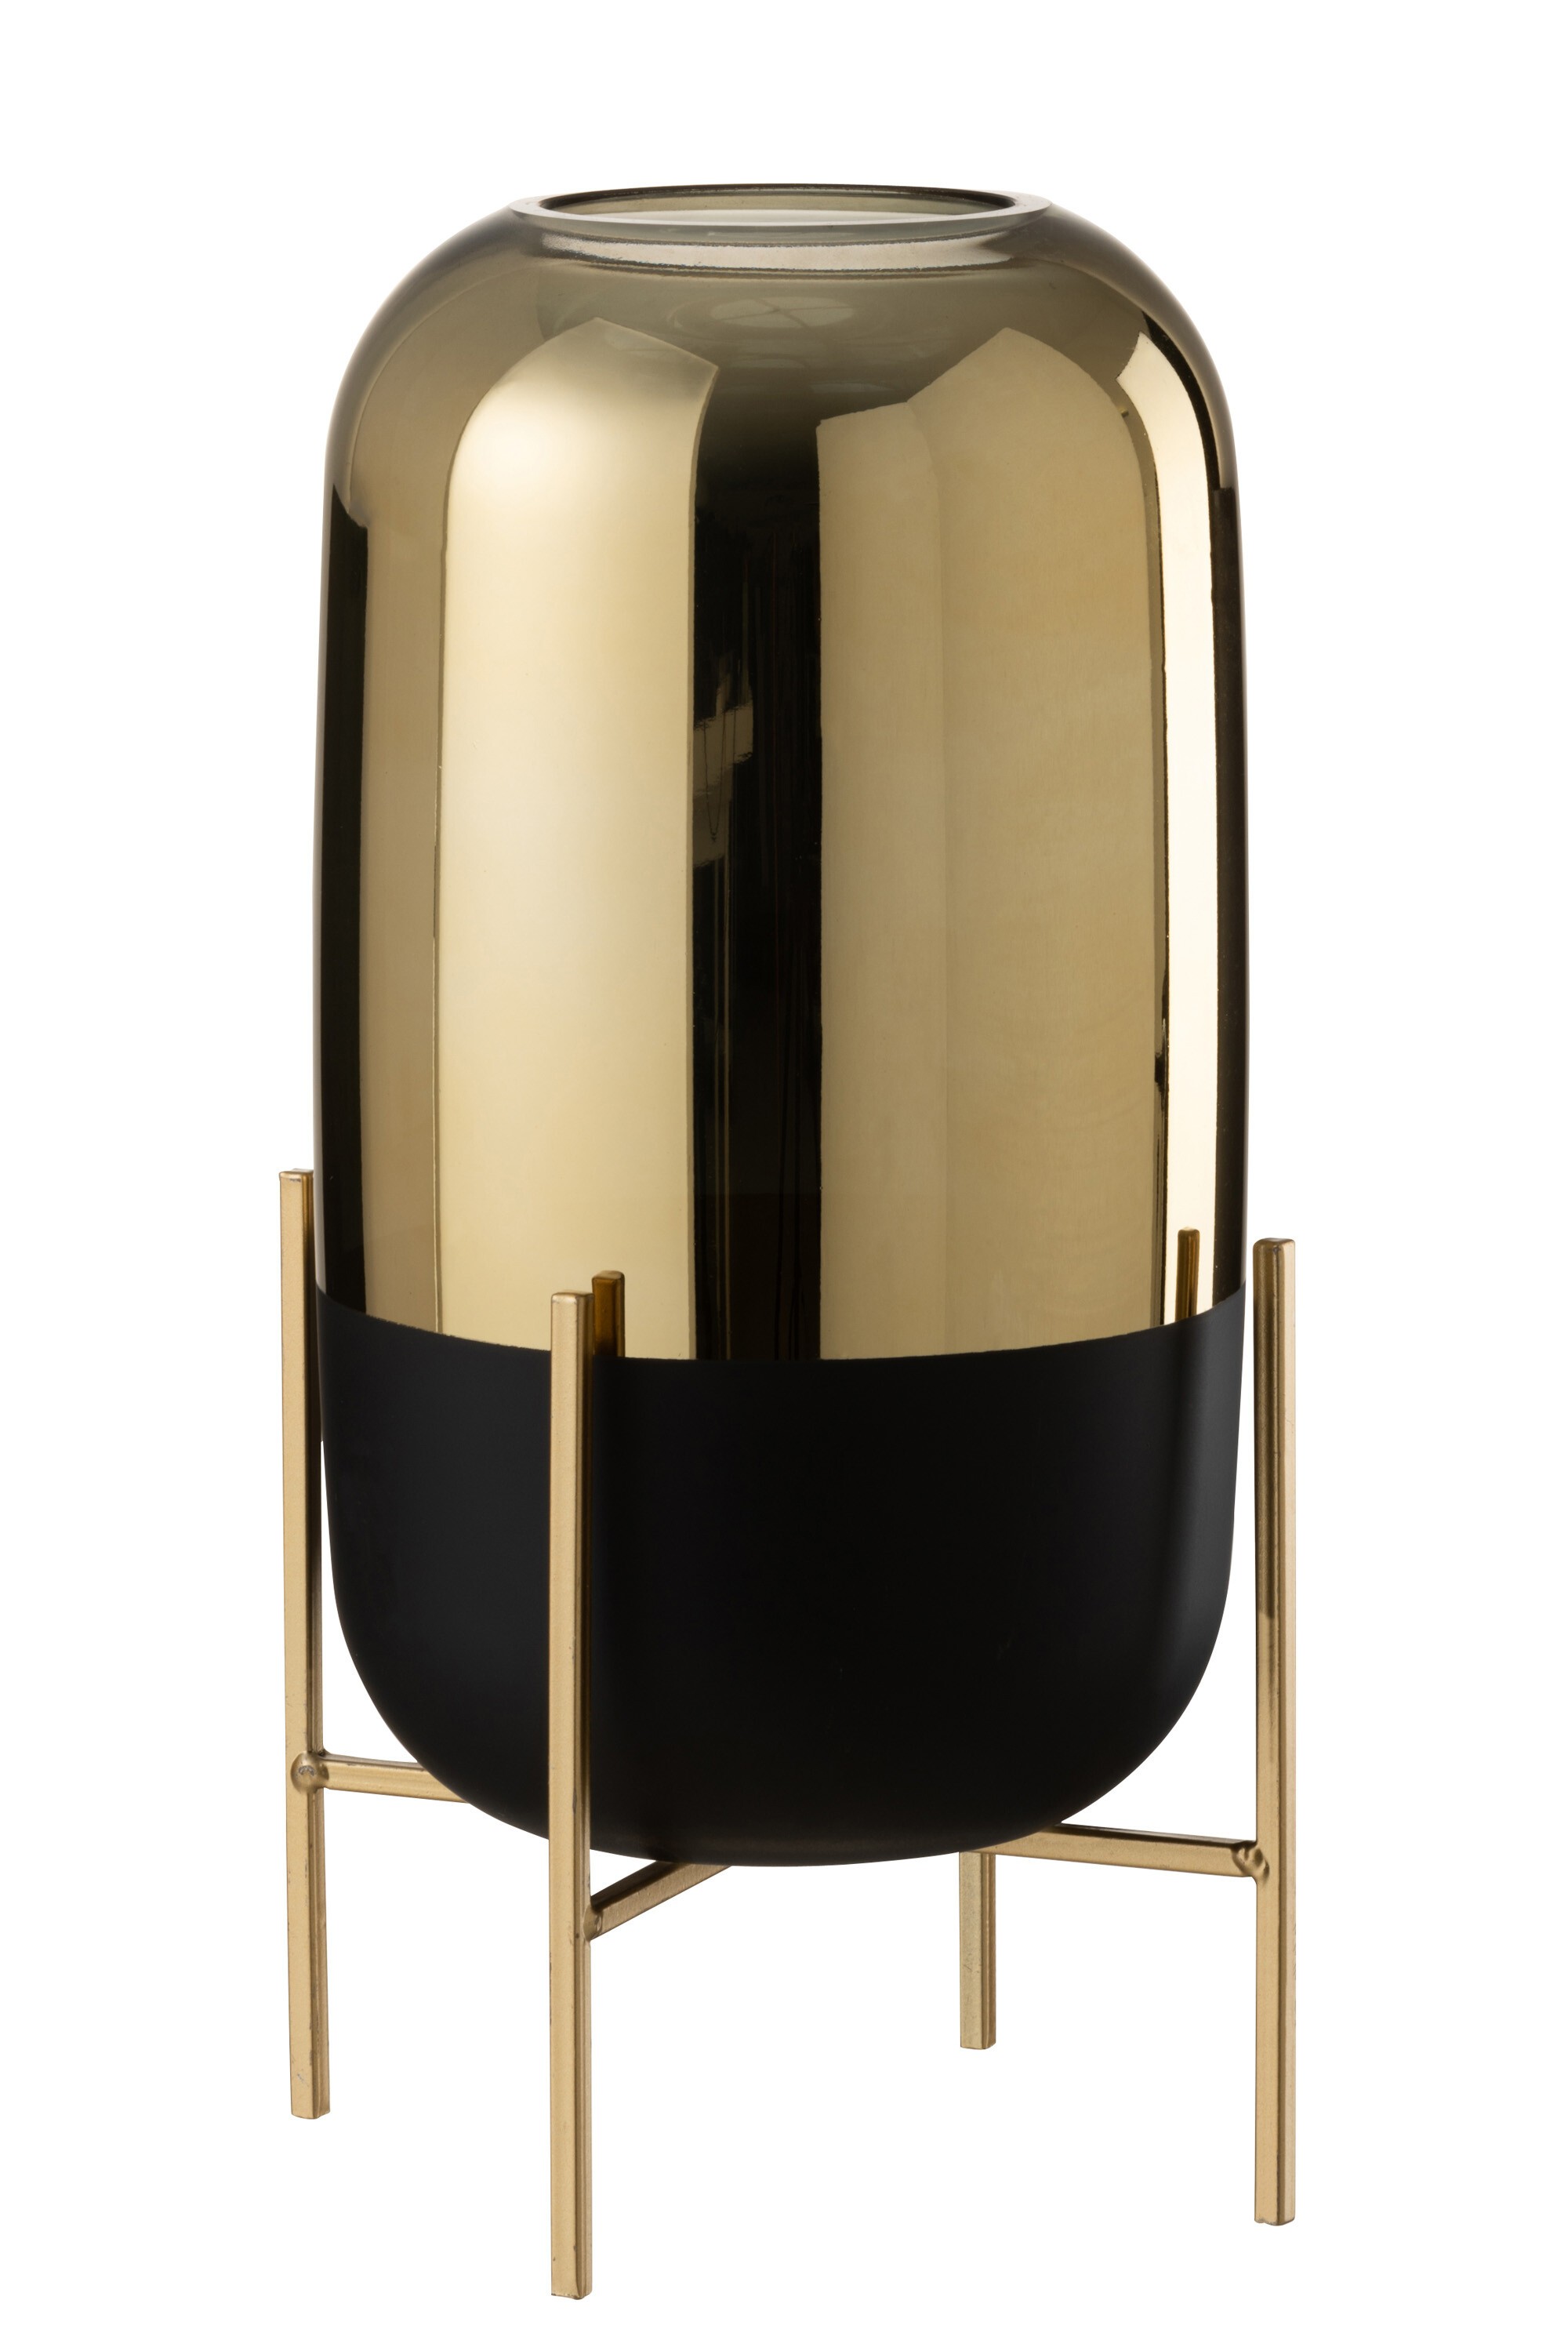 Skleněná černo-zlatá dekorační váza na podstavci - Ø 18*37cm J-Line by Jolipa